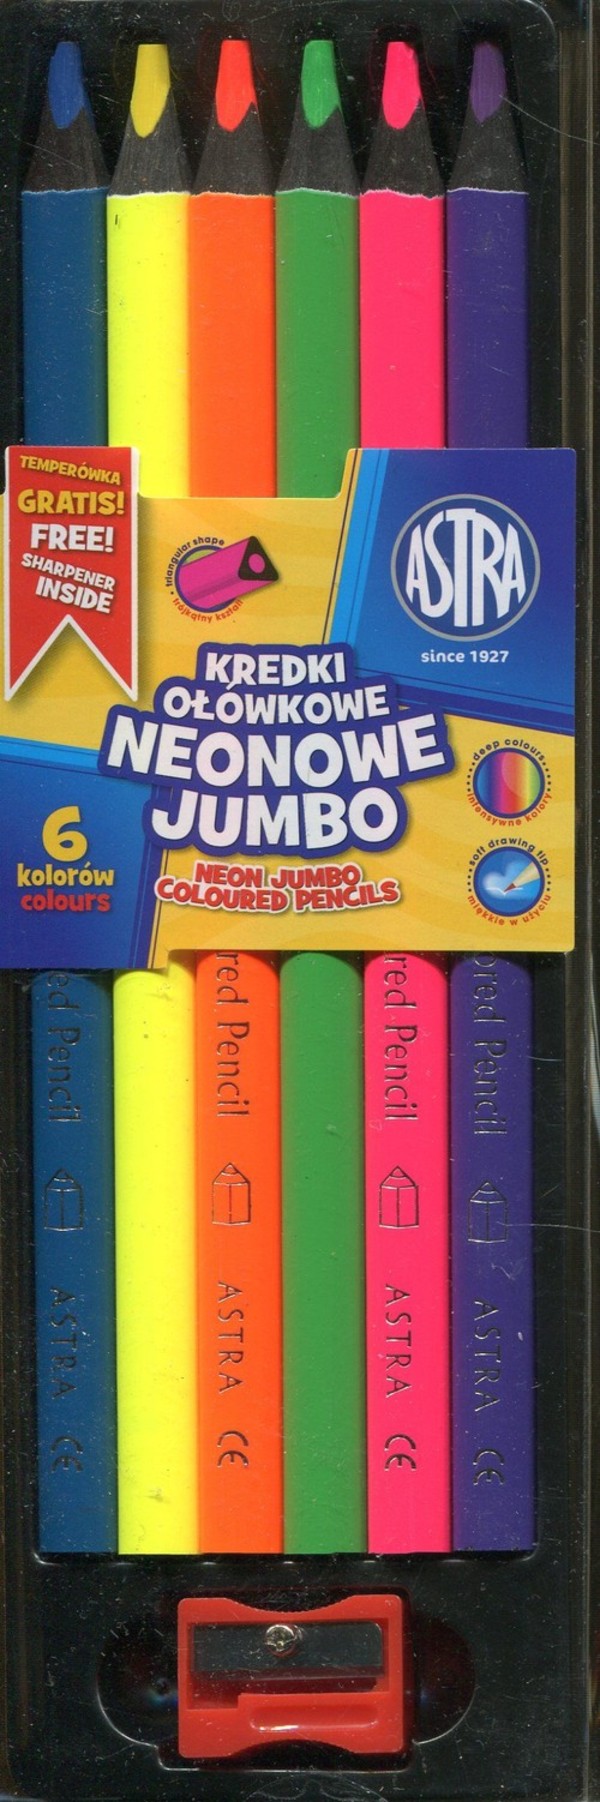 Kredki ołówkowe Jumbo neonowe 6 kolorów